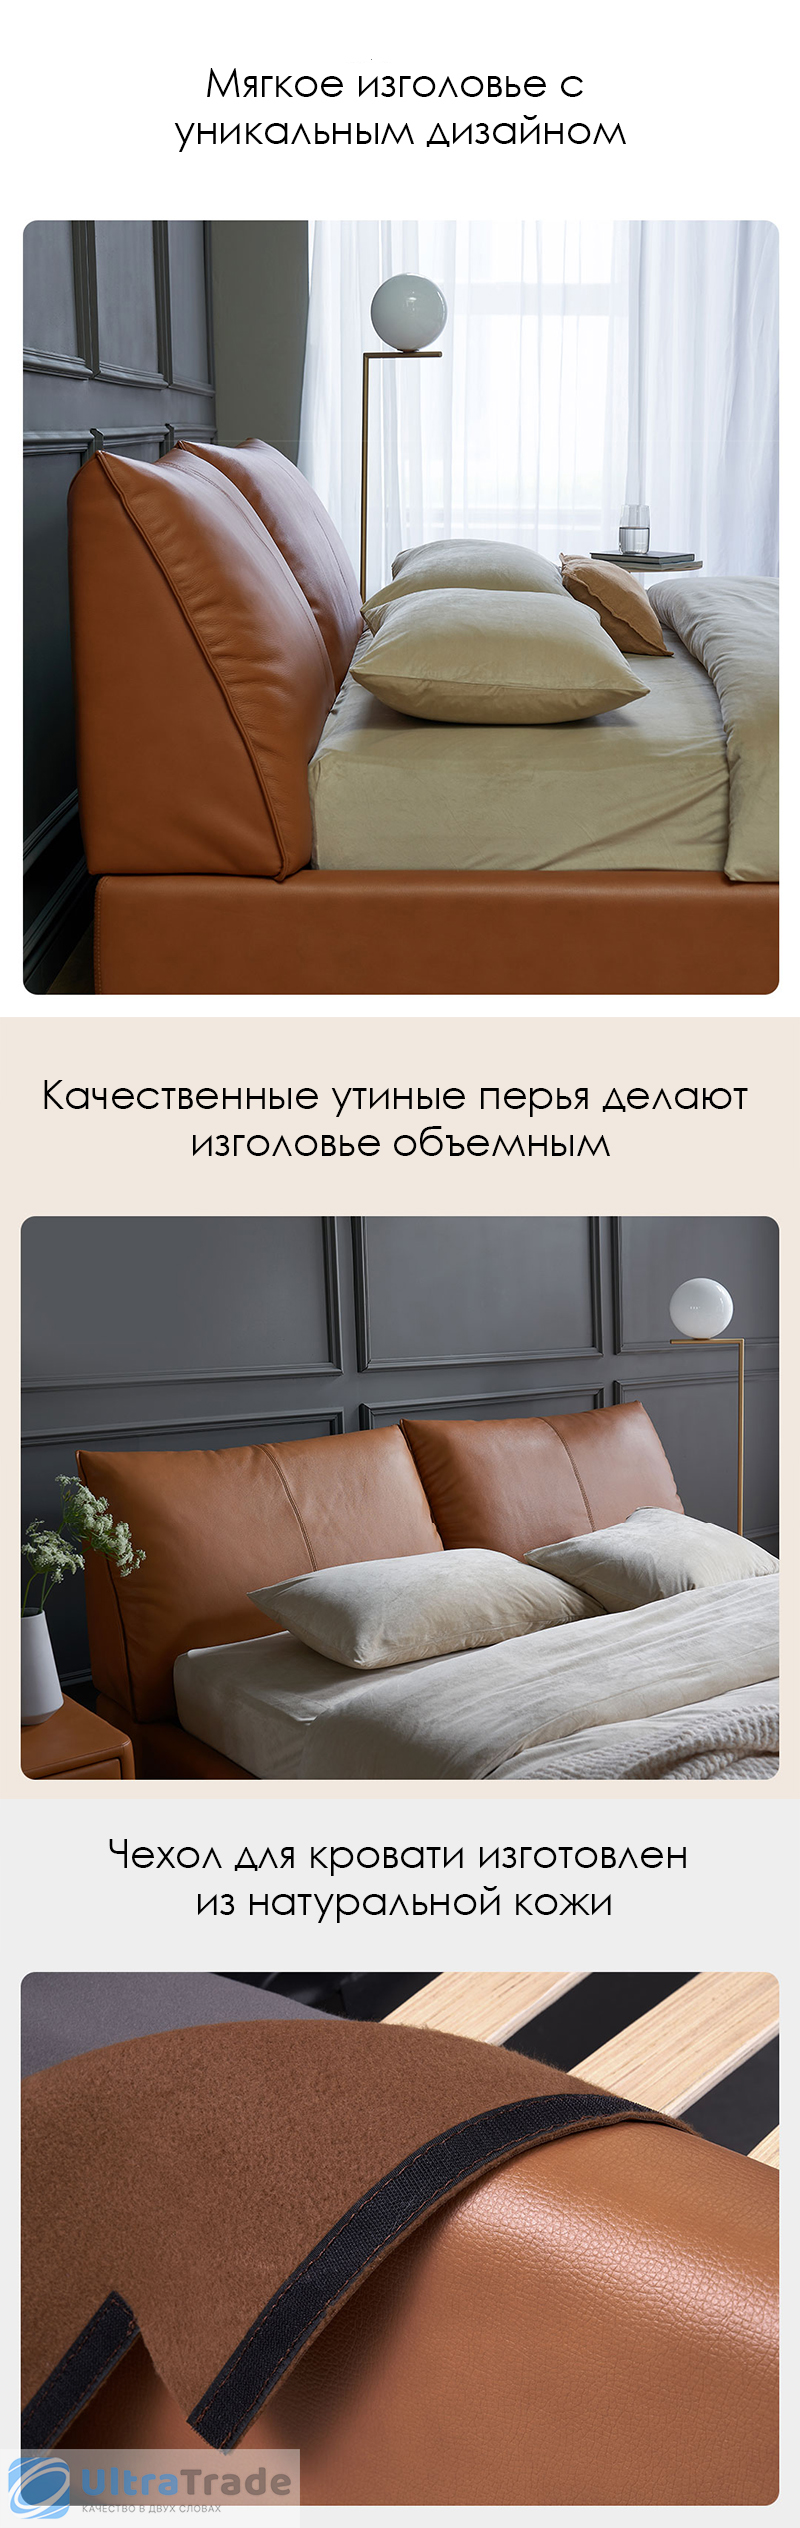 Двуспальная кровать с подъемным механизмом Xiaomi Yang Zi Look Soufflé Leather Storage Bed 1.5 m Light Grey